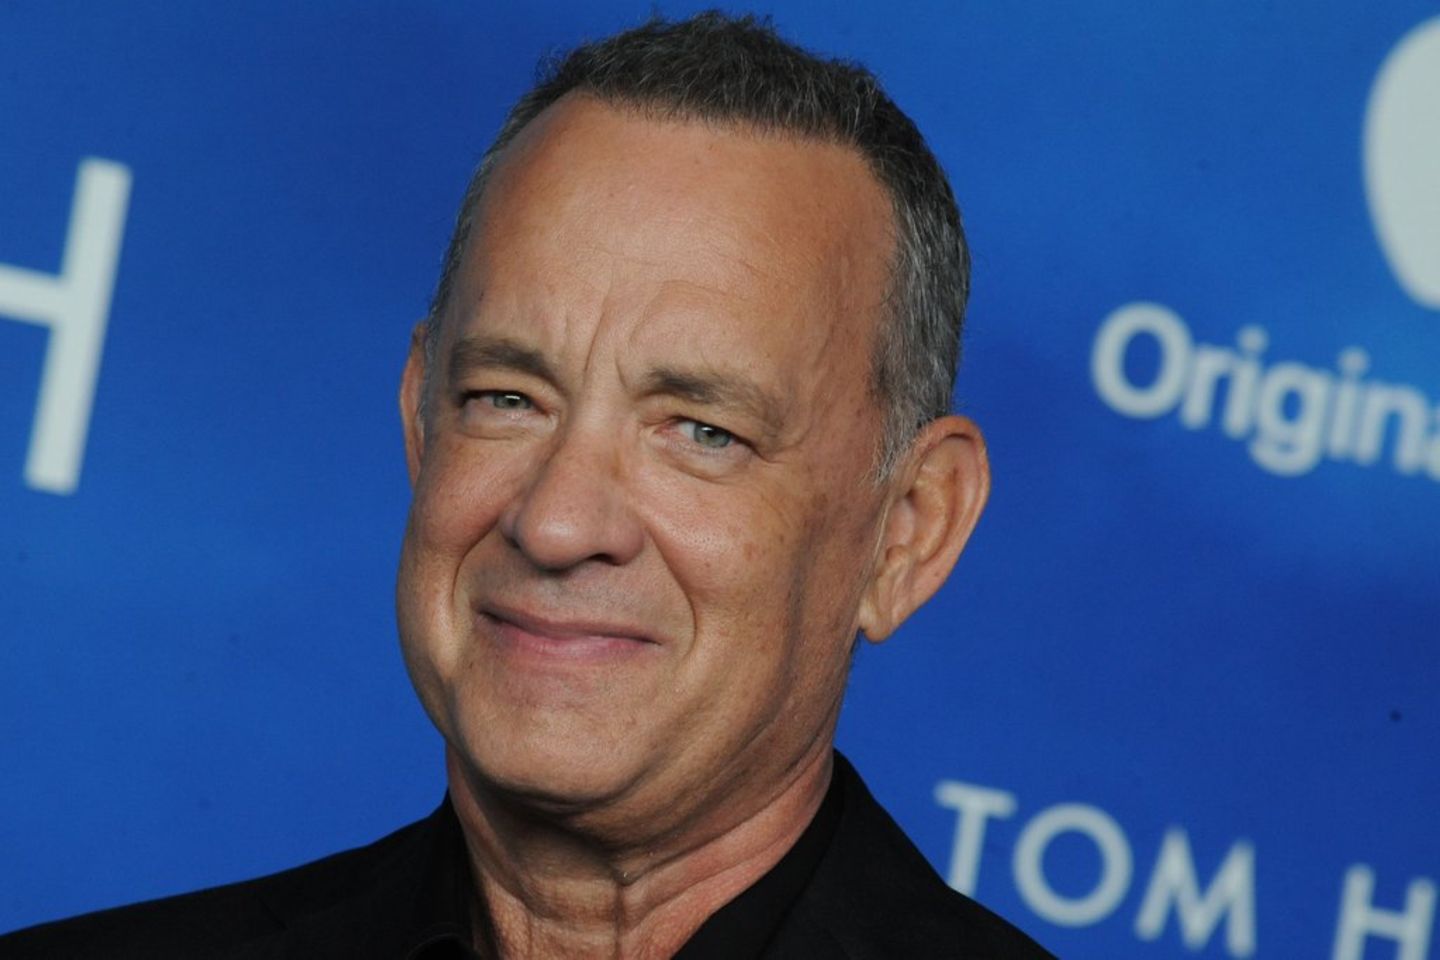 Schauspieler Tom Hanks sagt, dass er dank künstlicher Intelligenz auch nach seinem Tod noch in Filmen auftreten könne.